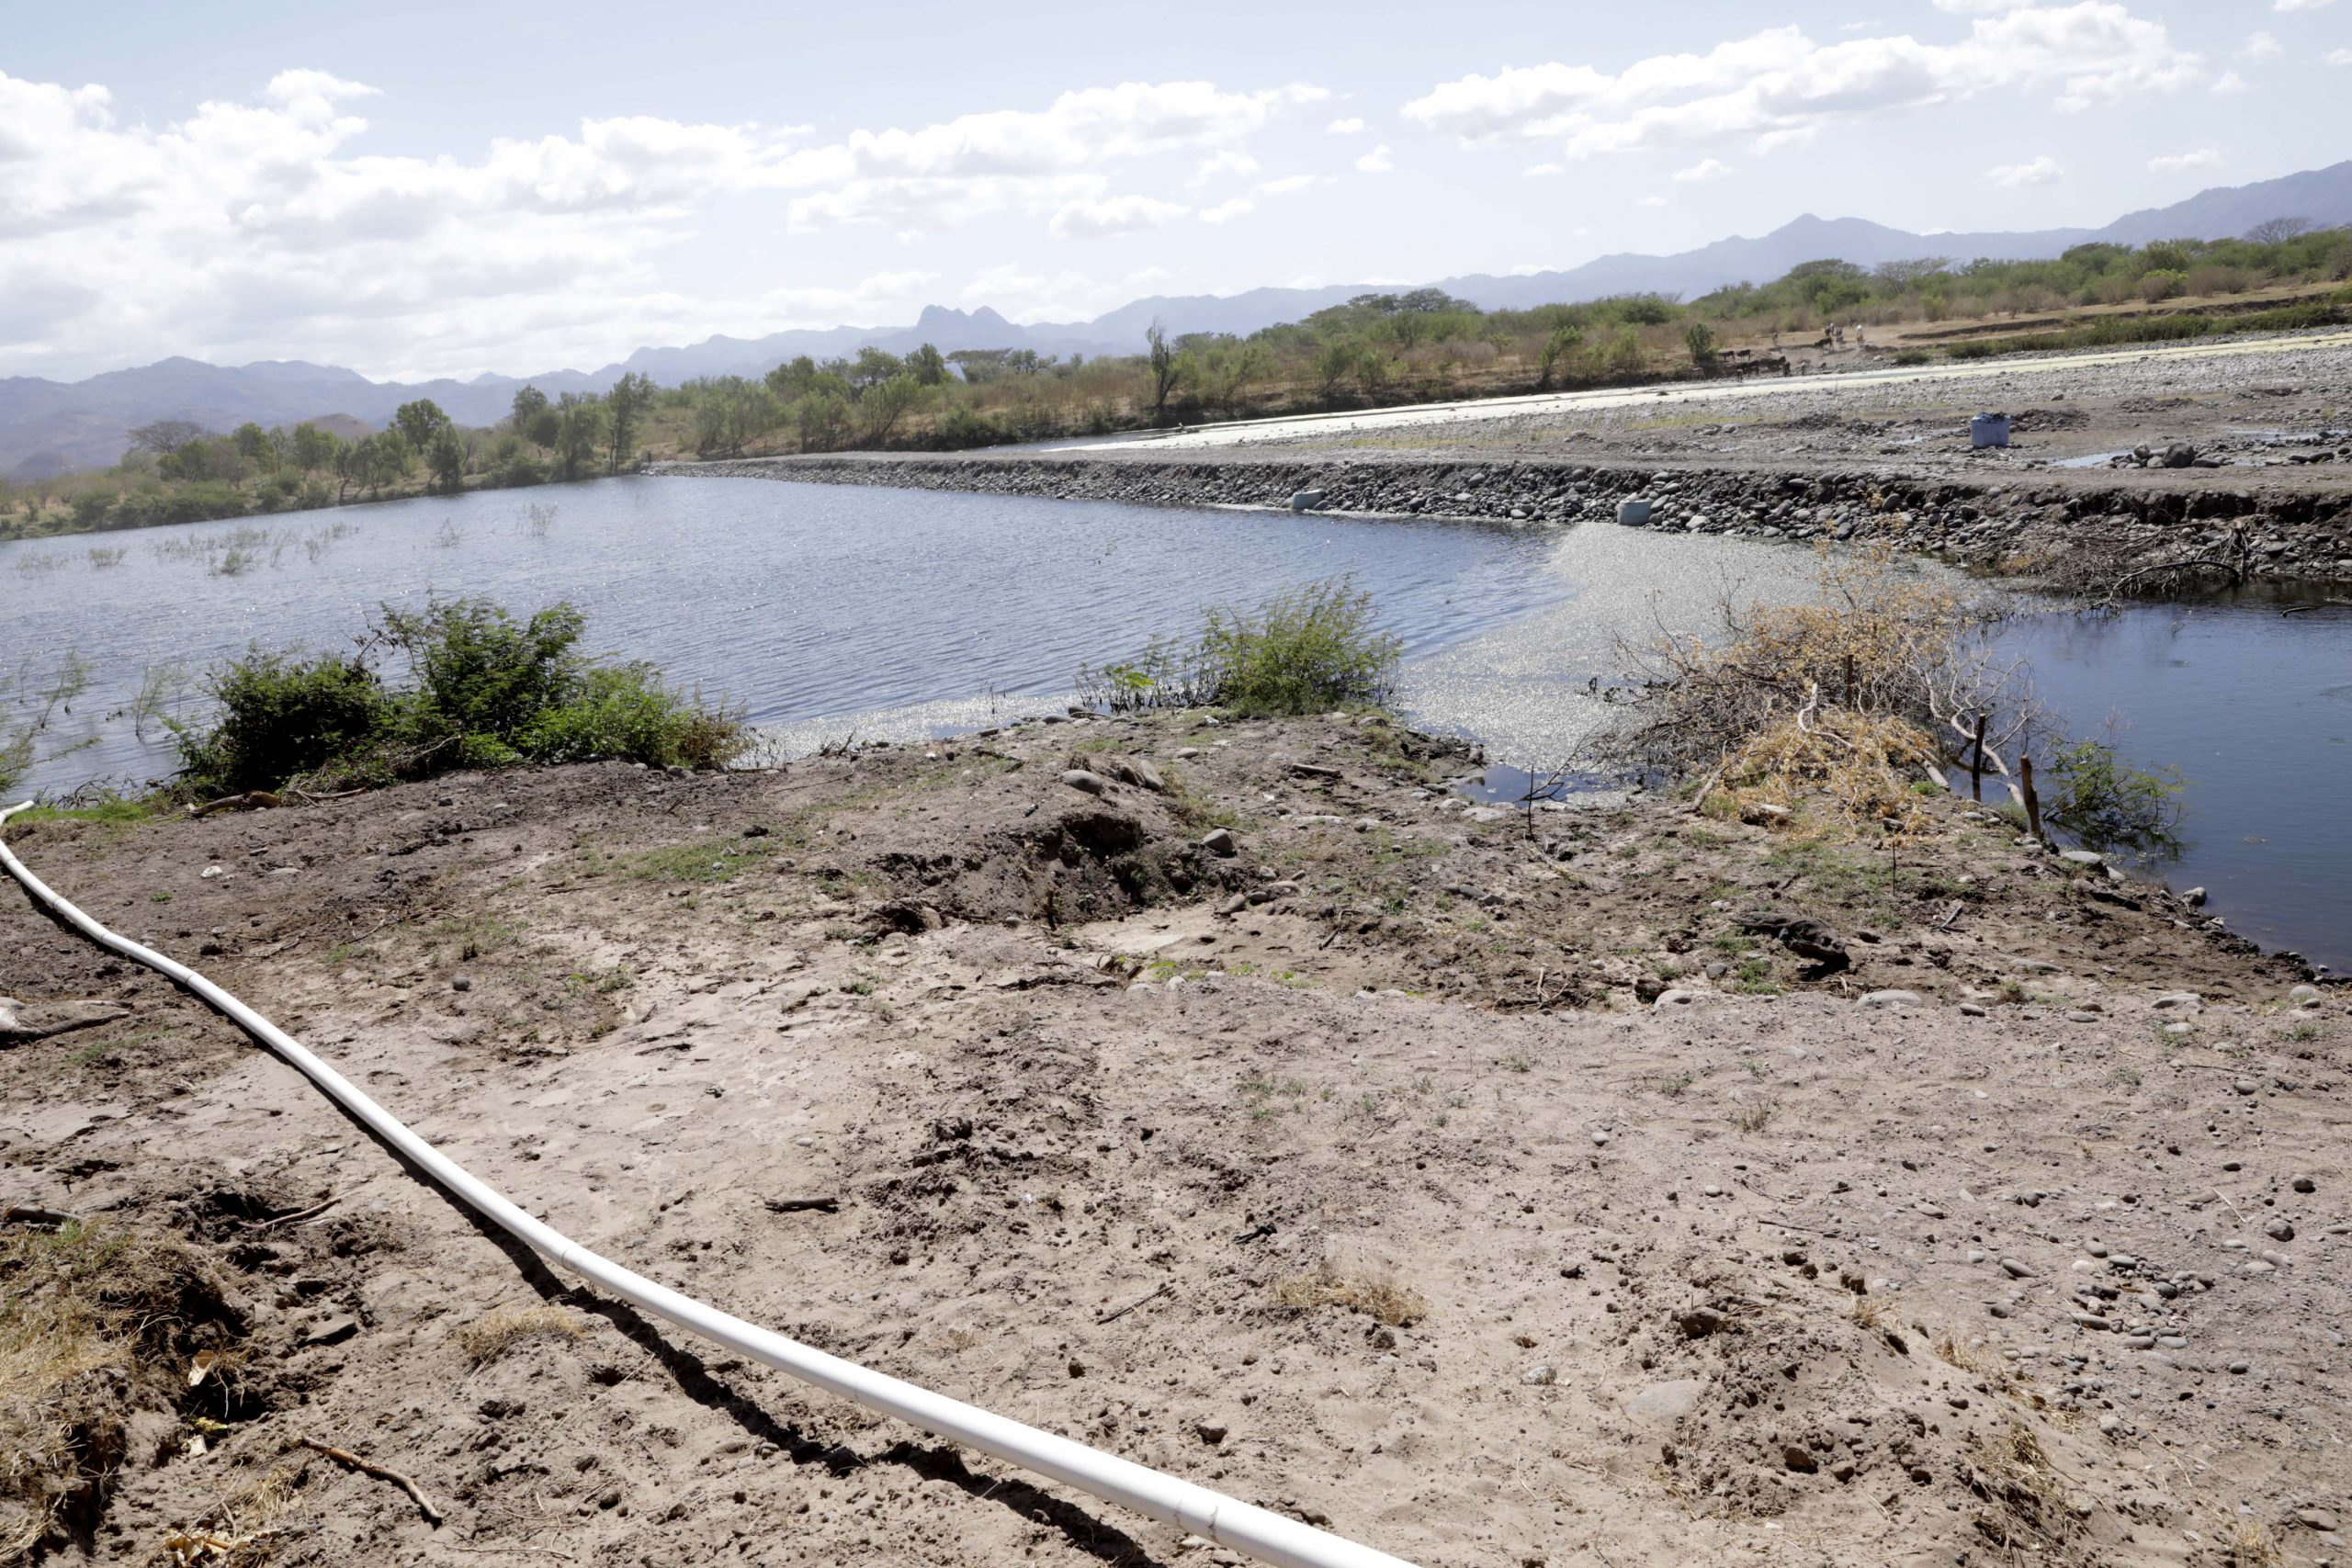 Diques retienen agua para enfrentar sequía en zona sur